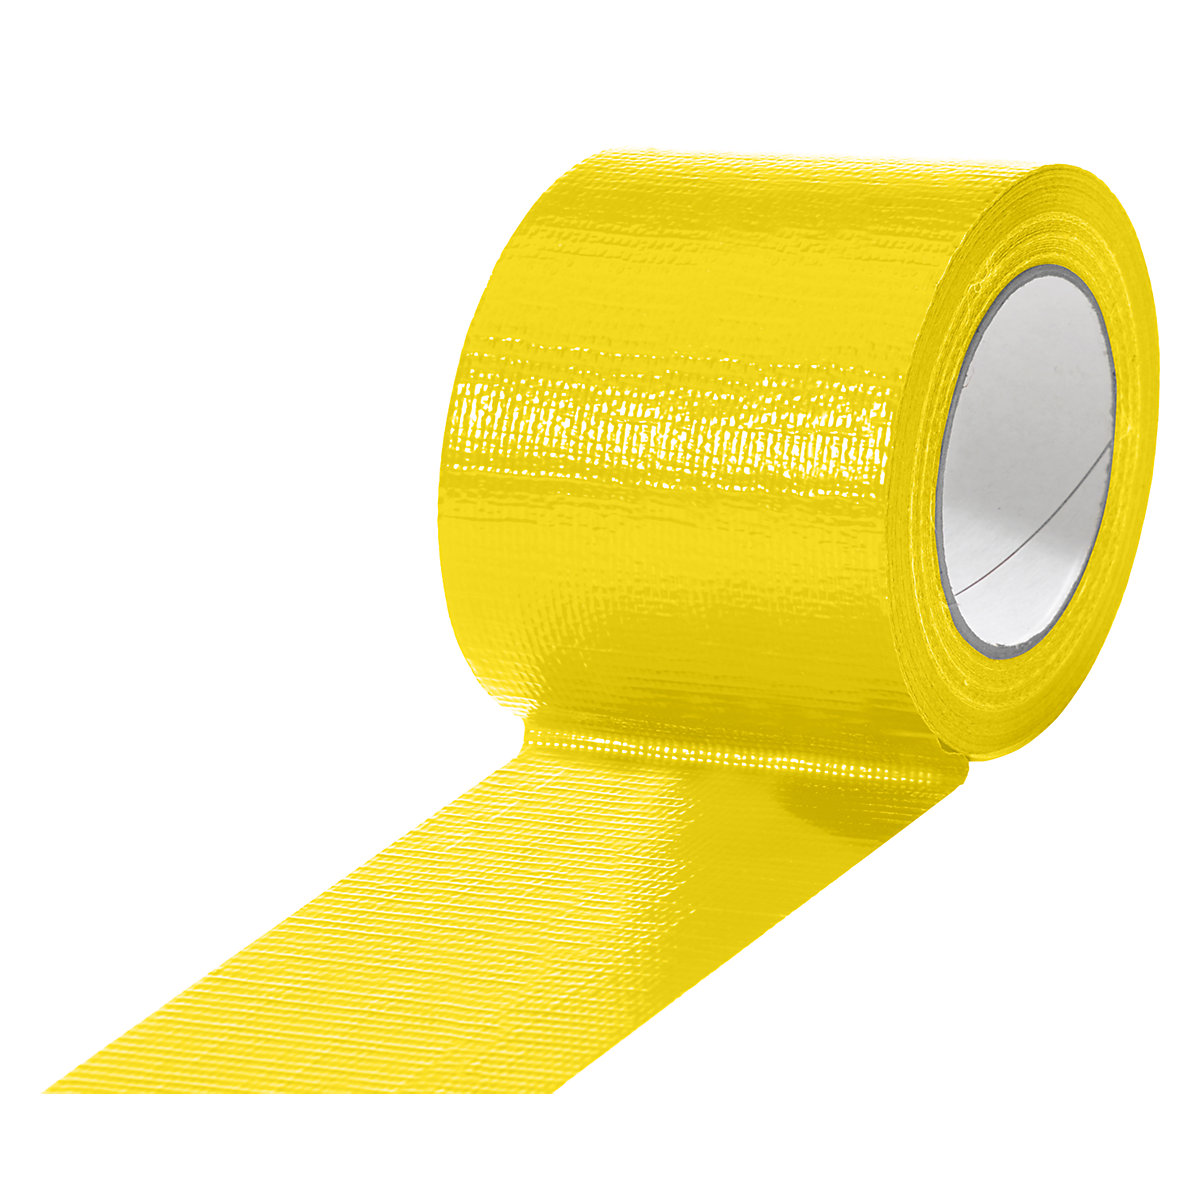 Traka od tkanine, u različitim bojama, pak. 12 rola, u žutoj boji, širina trake 75 mm